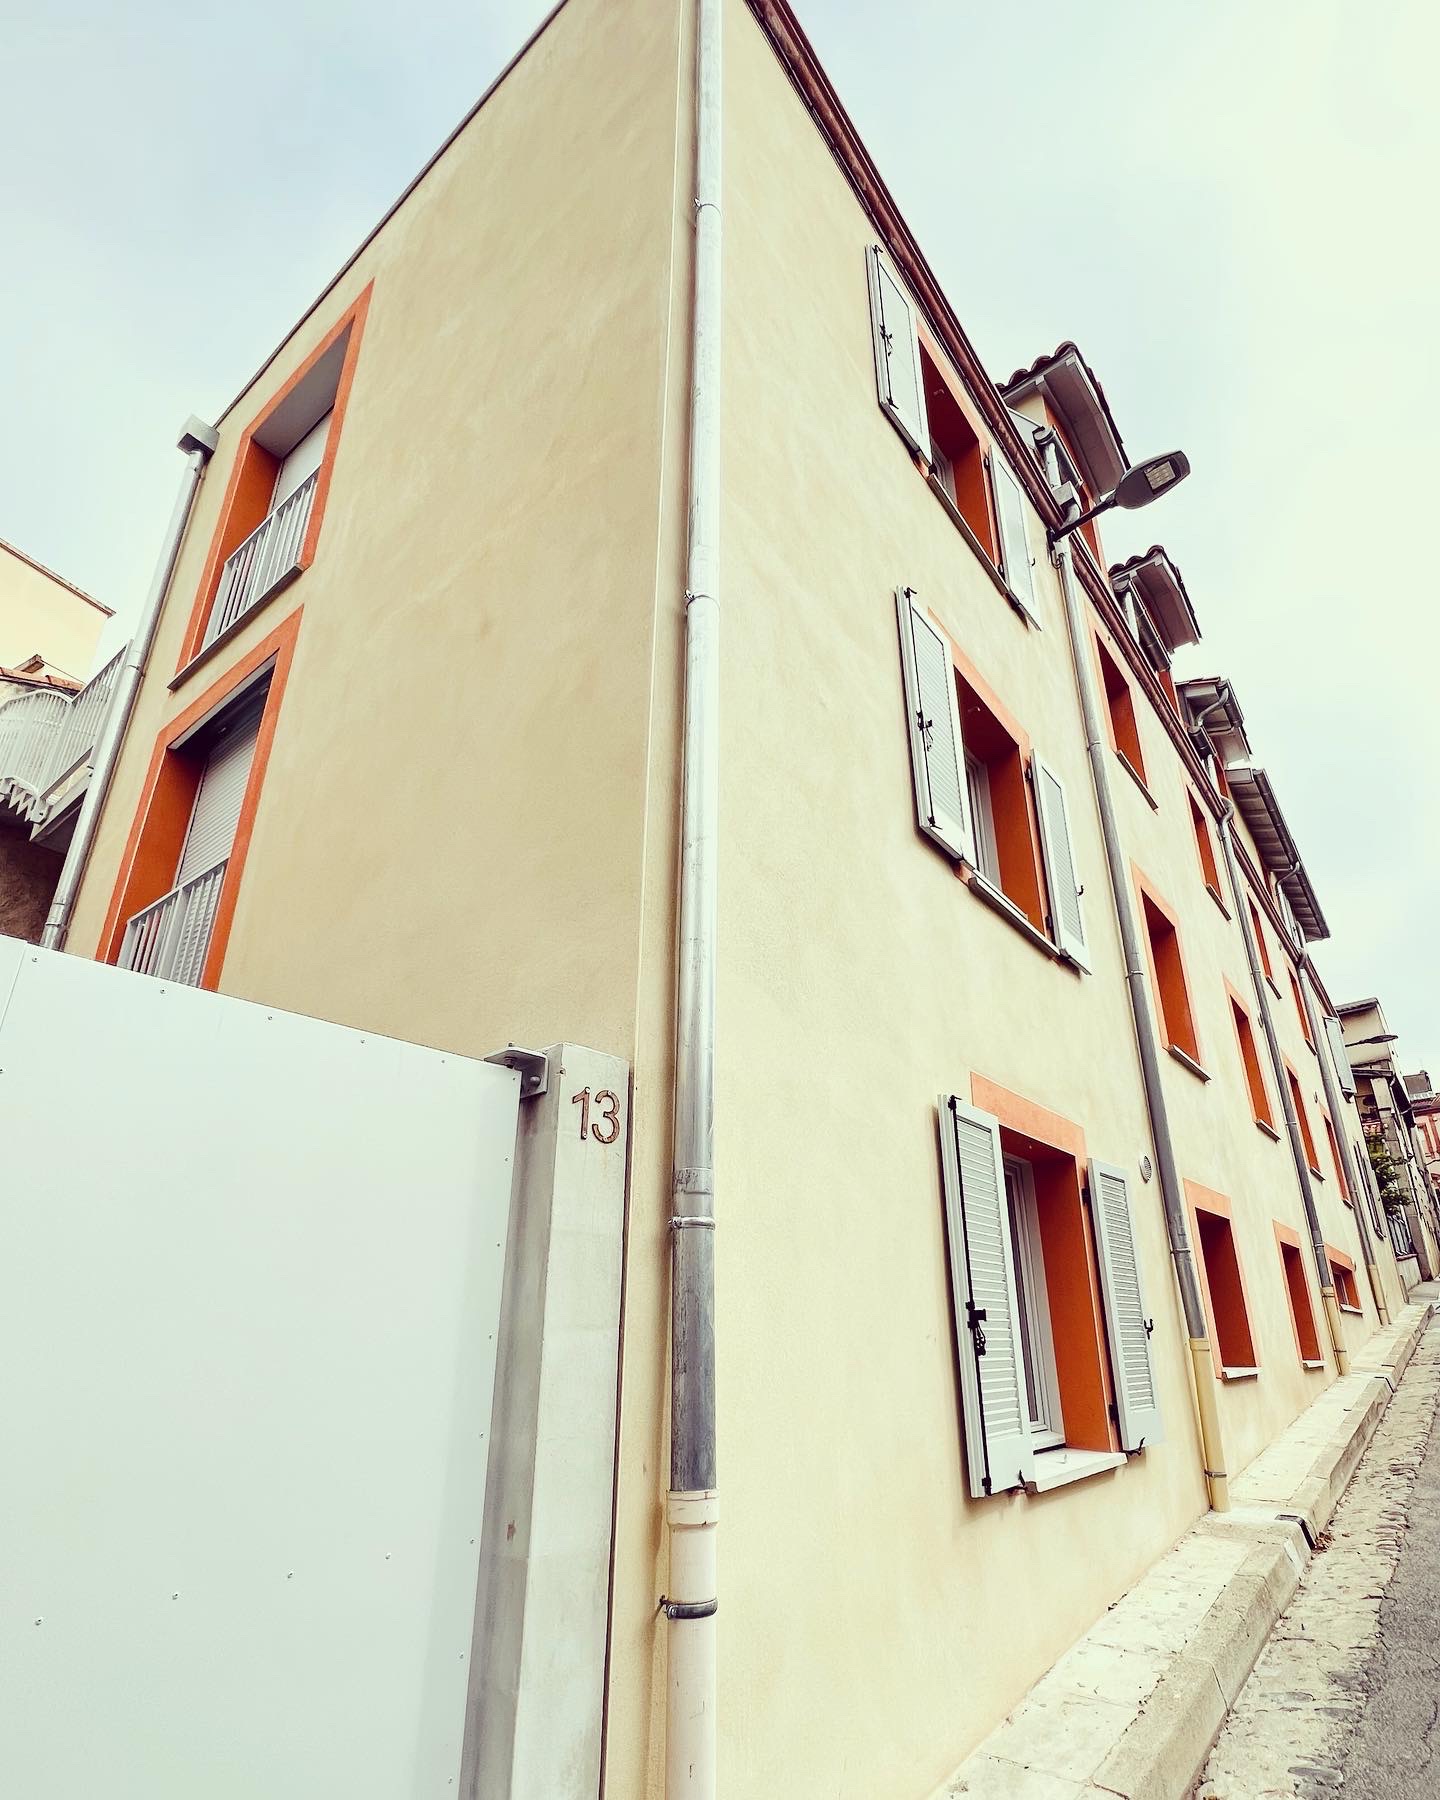 Rénovation complète d'un immeuble existant pour la création de 8 logements et d'un espace professionnel. Rue Caussade - Toulouse.